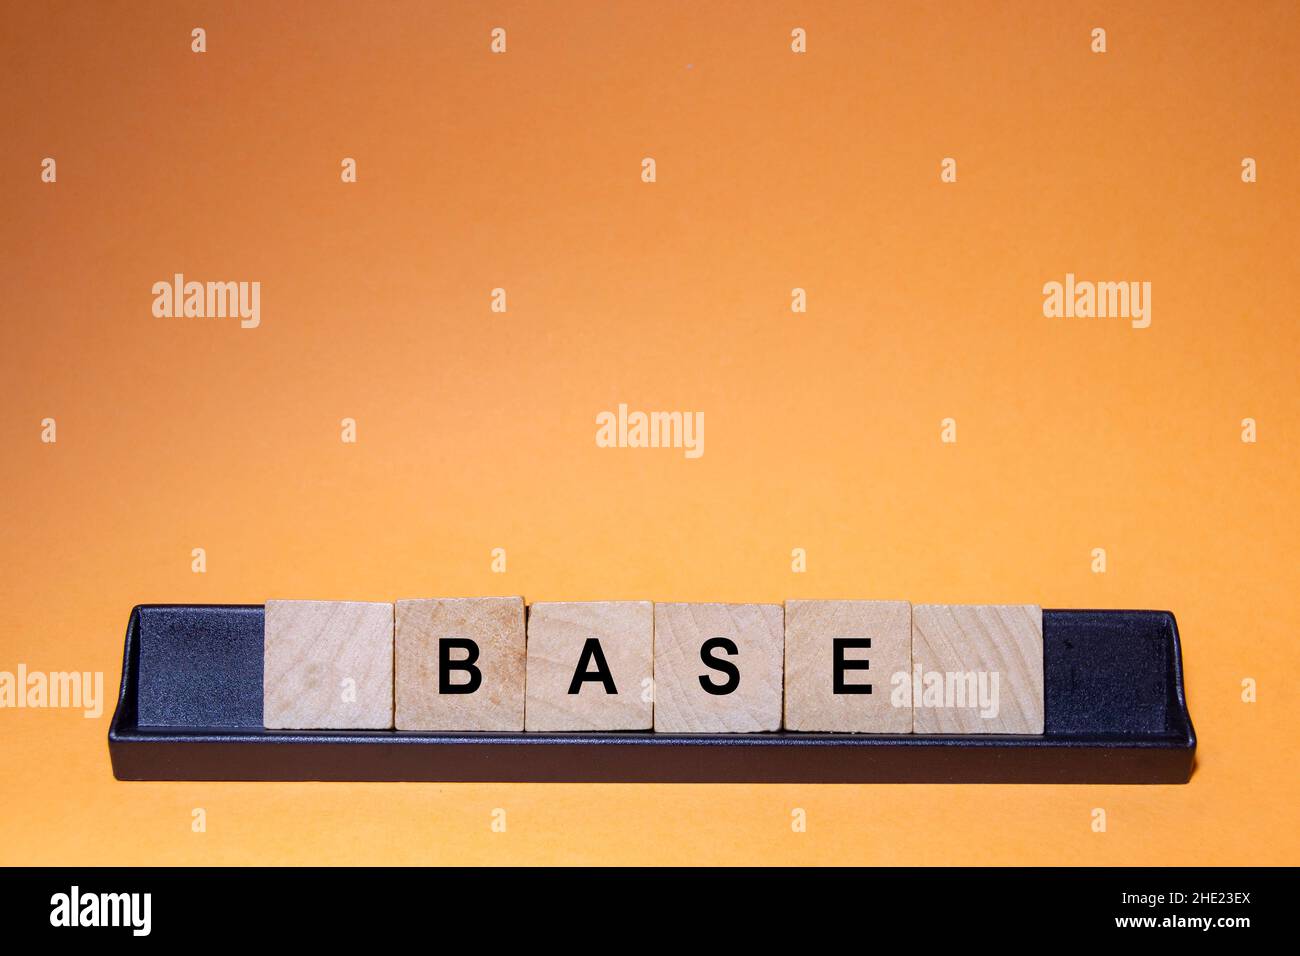 BASE.Mot écrit sur des carreaux carrés en bois avec un fond orange.Photographie horizontale. Banque D'Images